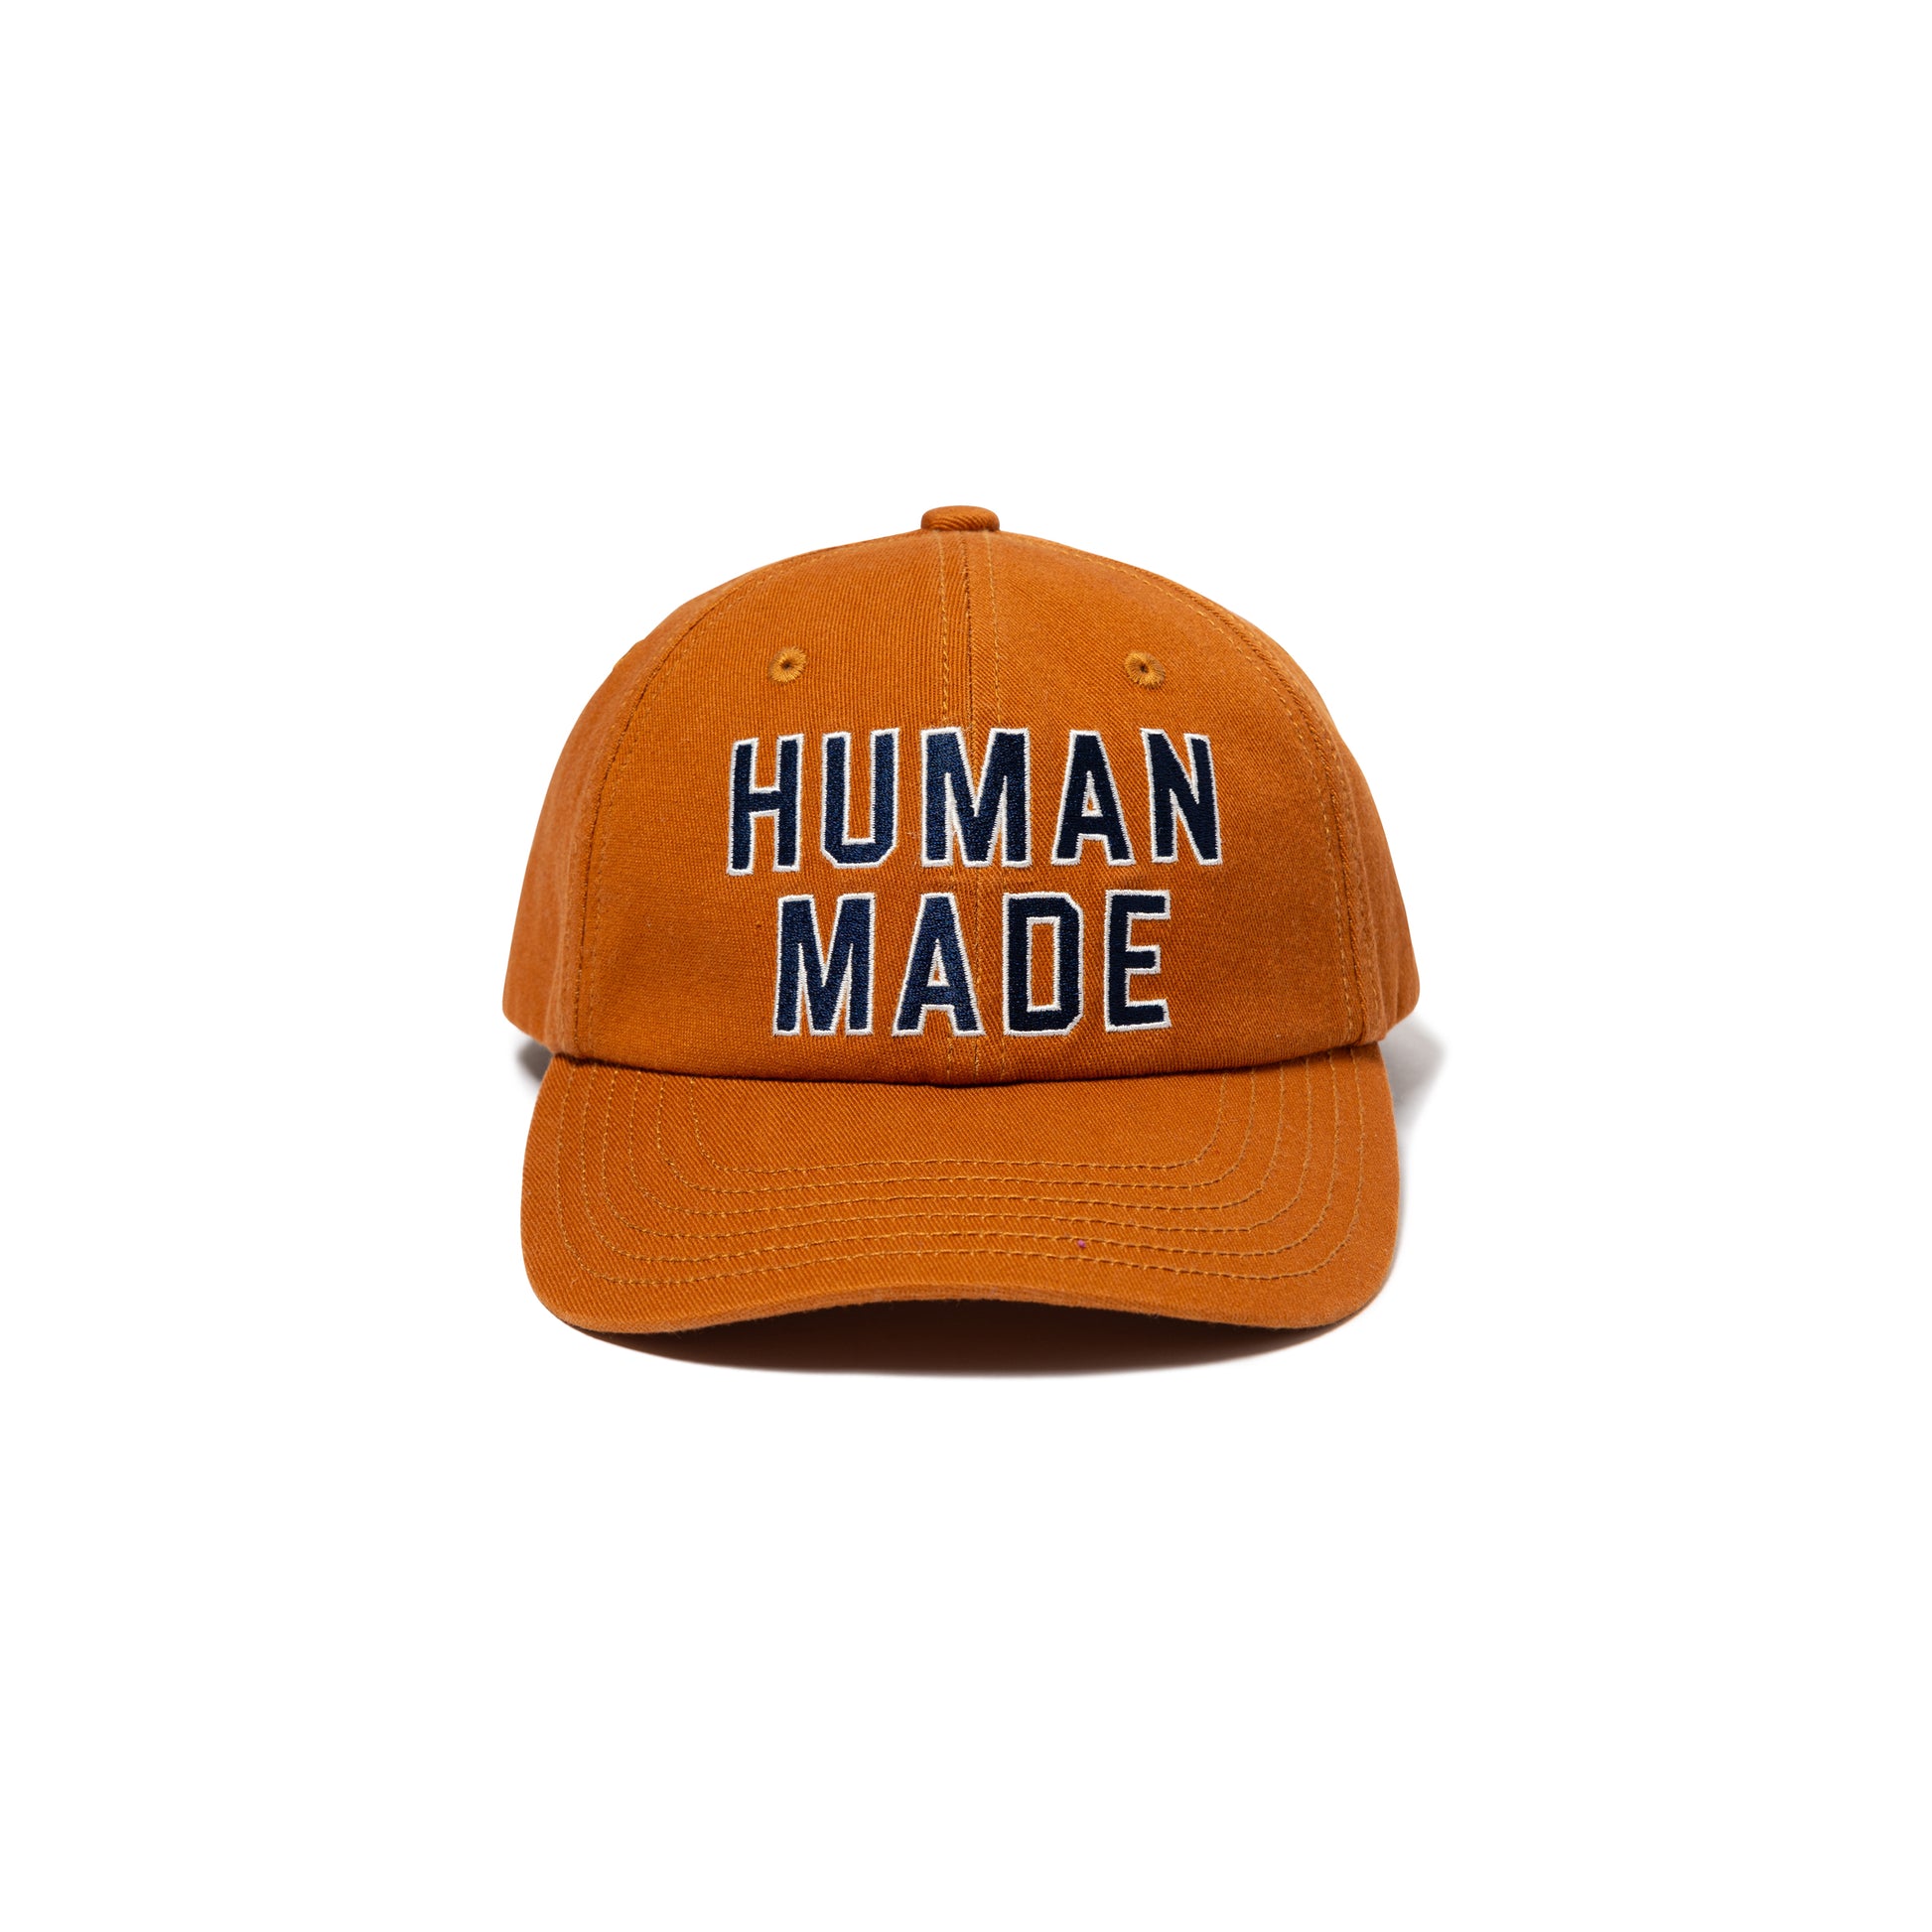 HUMAN MADE 6 PANEL CAP #2 OG-C